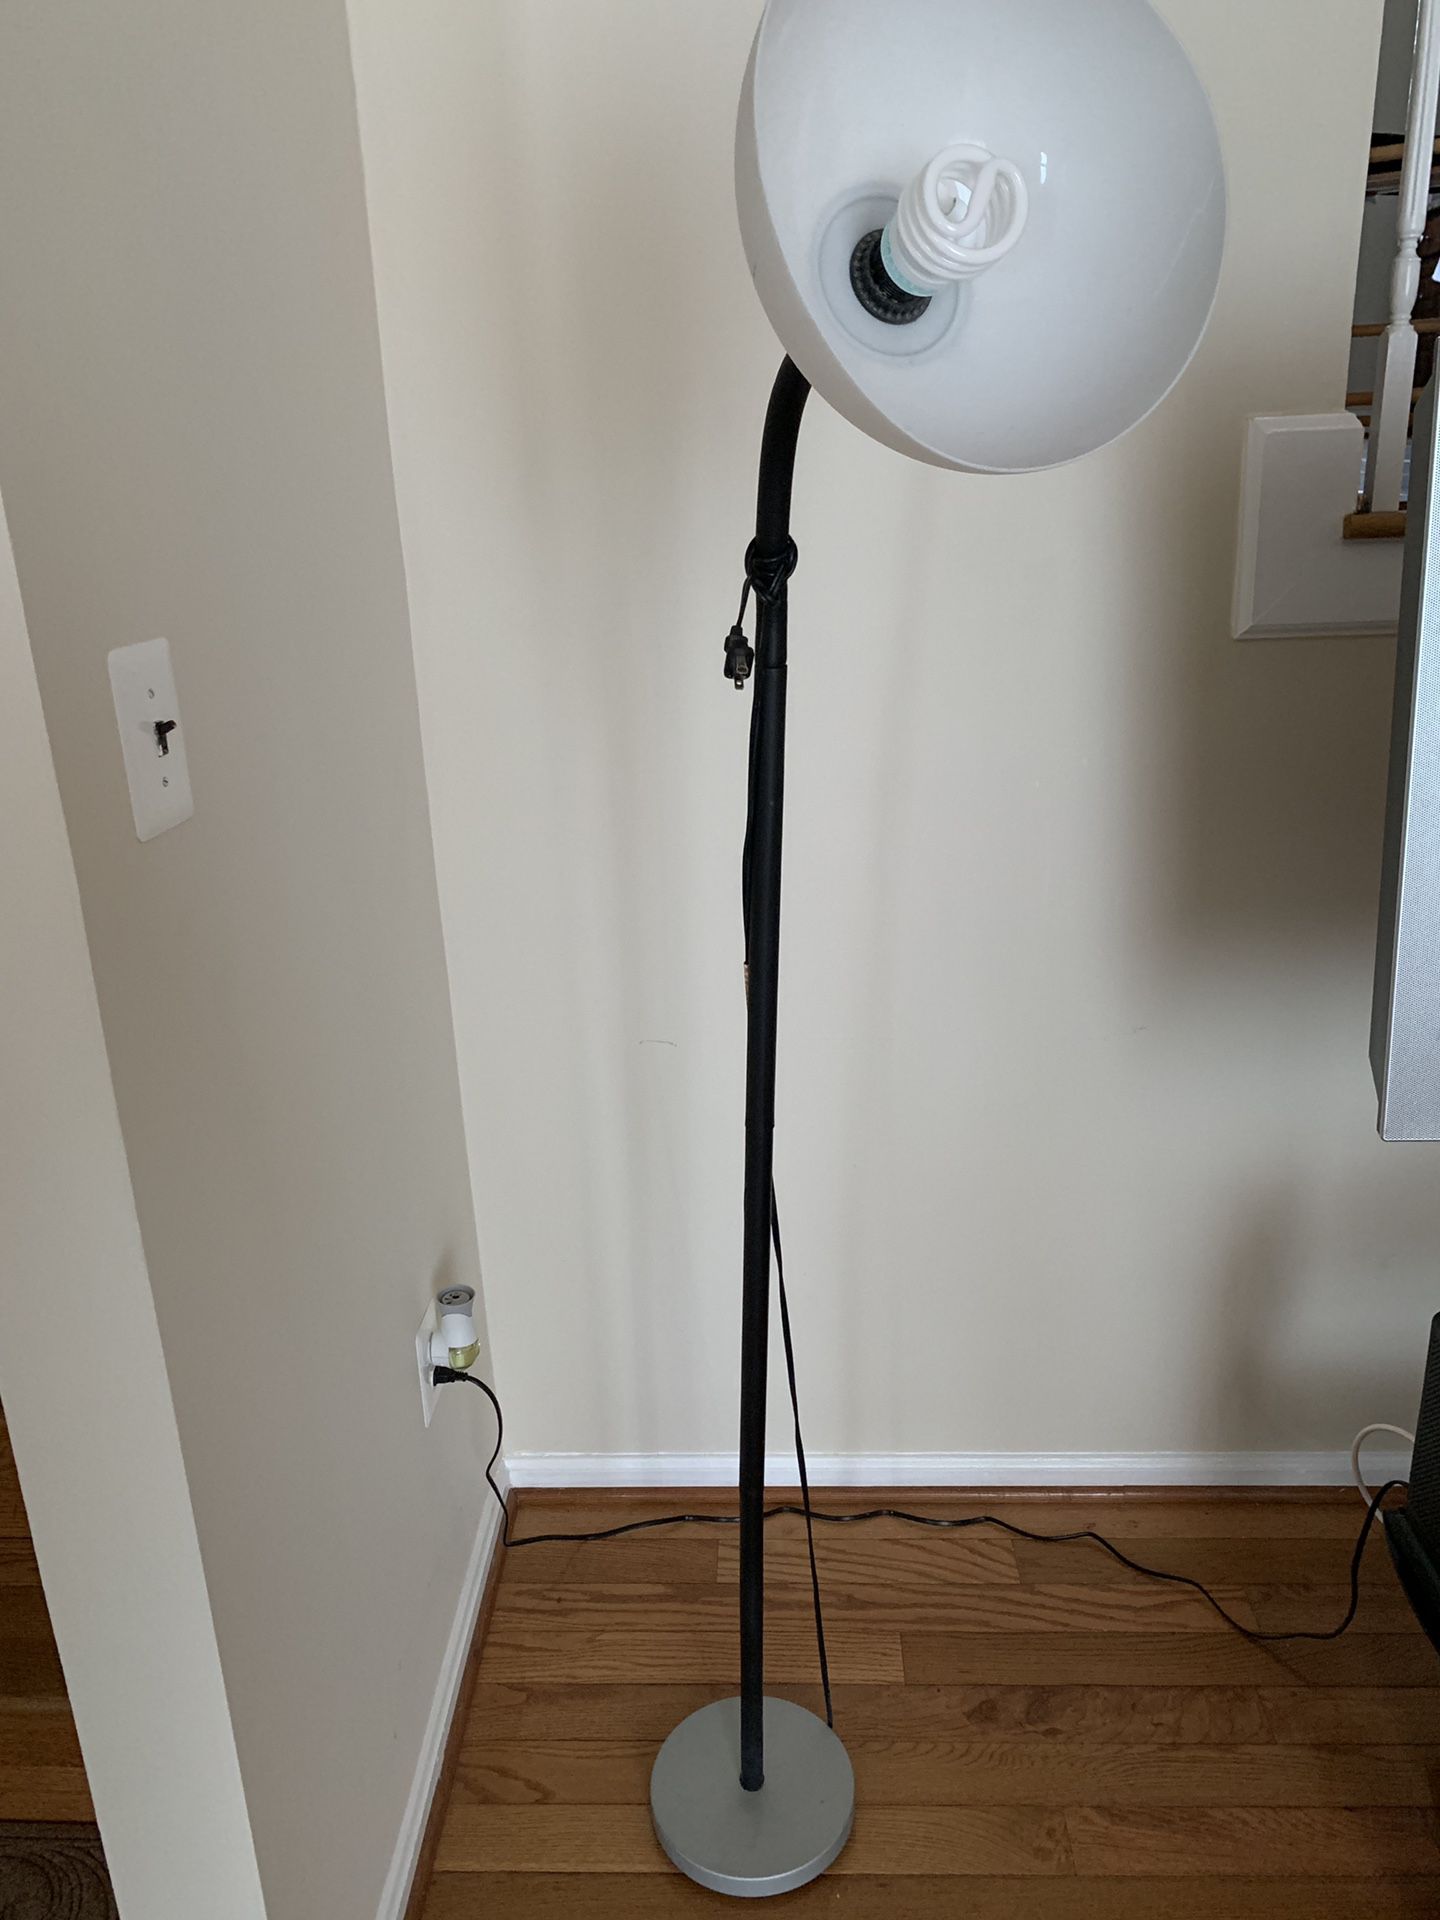 Floor Lamp in good condition.